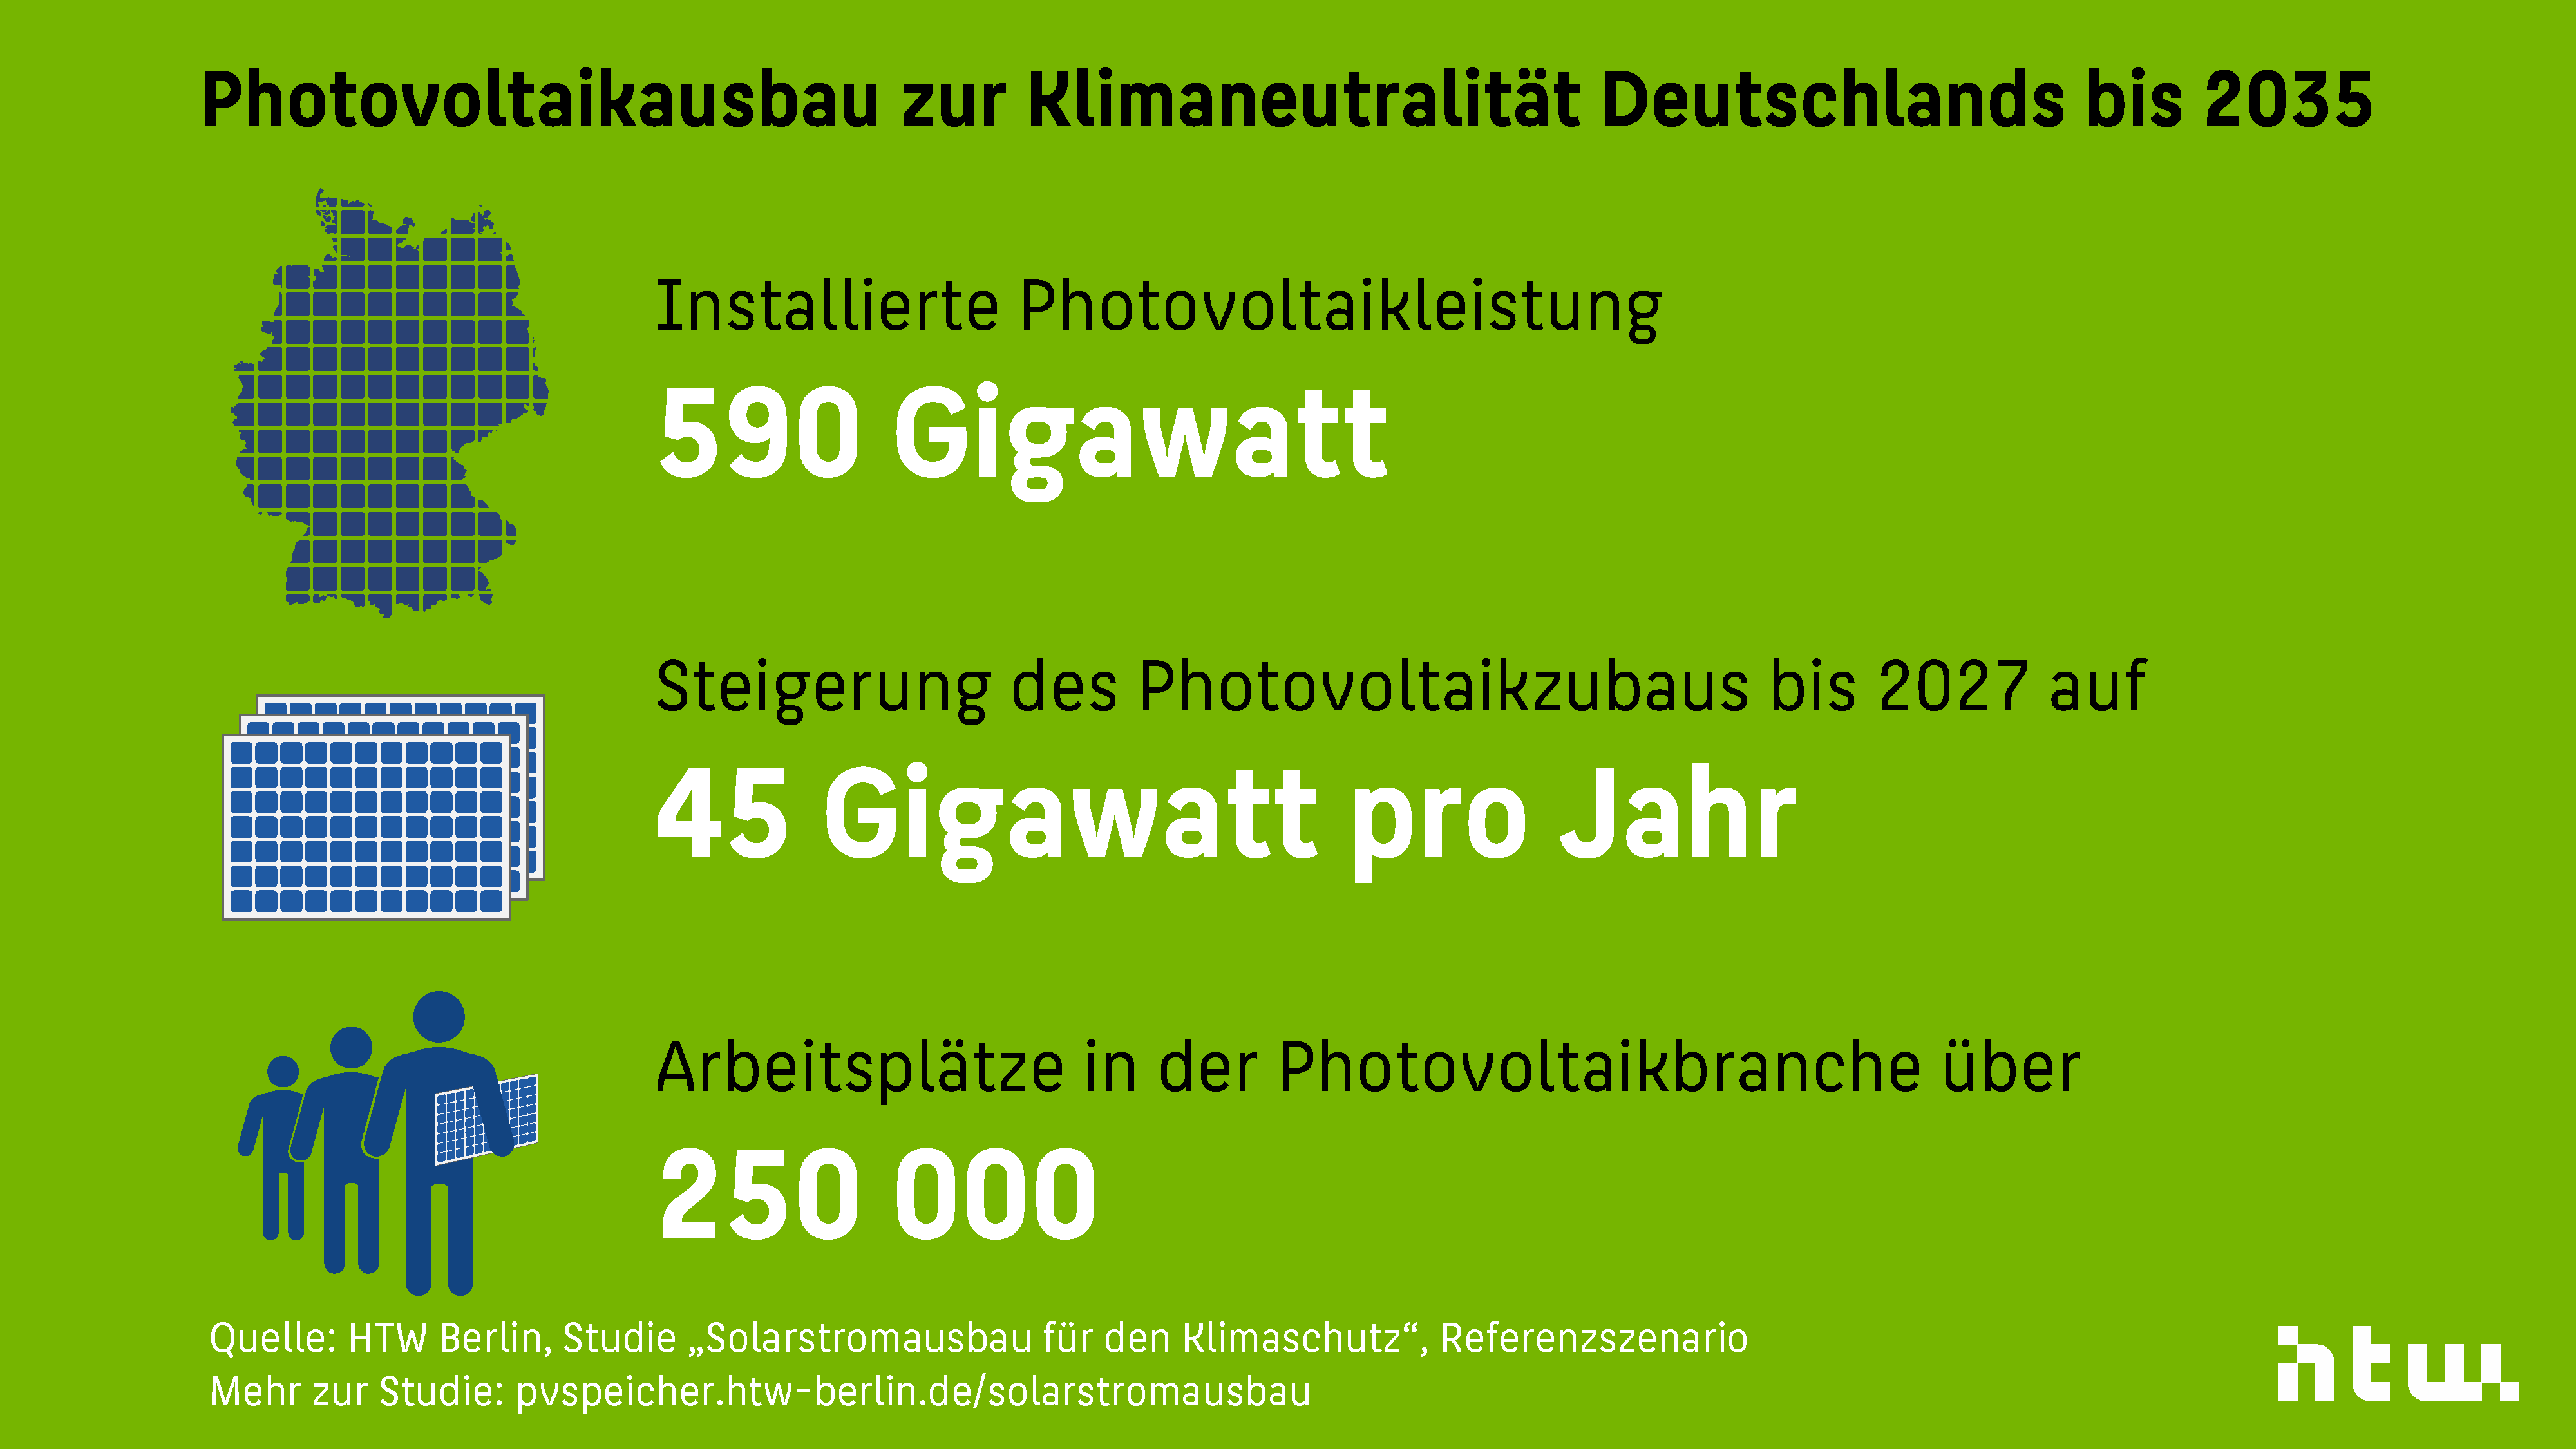 Der Photovoltaikausbau muss in Deutschland bis 2035 auf 590 GW verzehnfacht werden. In der Solarbranche werden mehr 250 000 Fachkräfte arbeiten.